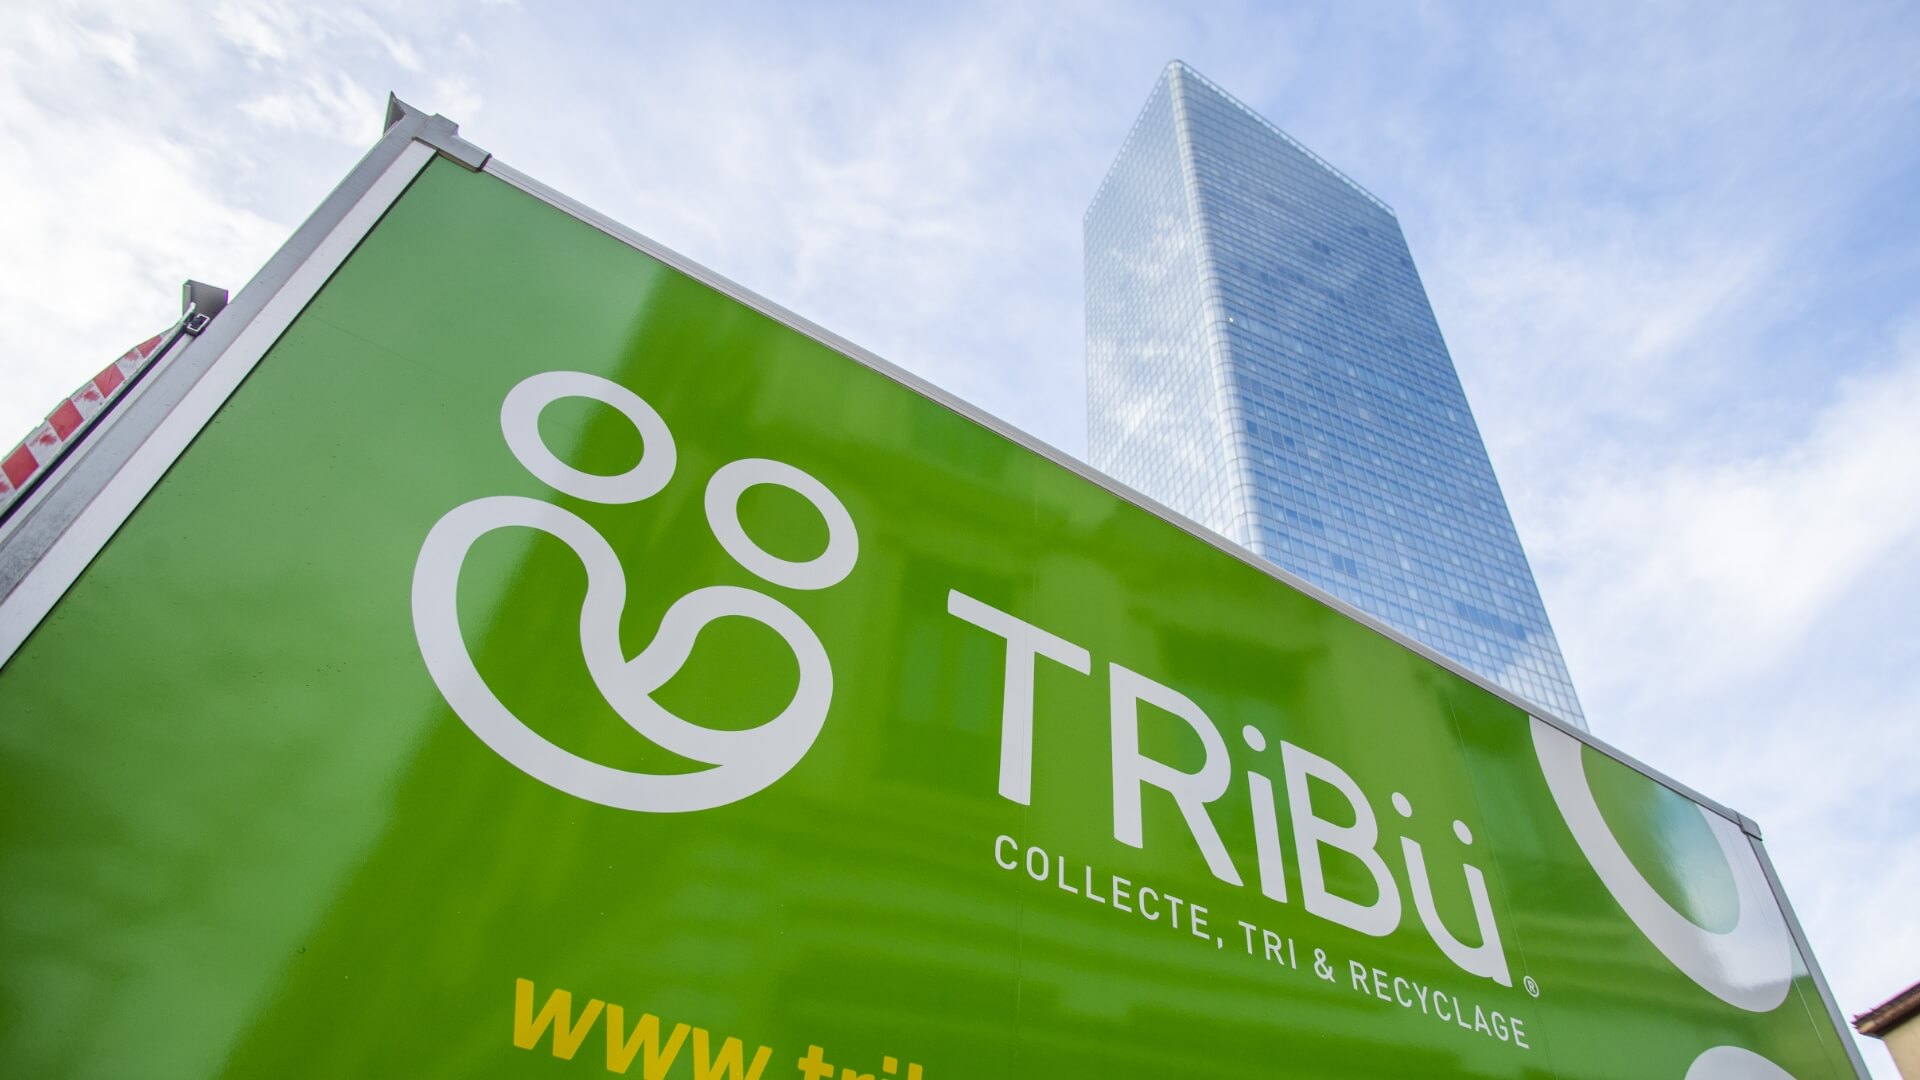 TRiBü recyclage Lyon Parti Dieu tour Incity collecte déchets